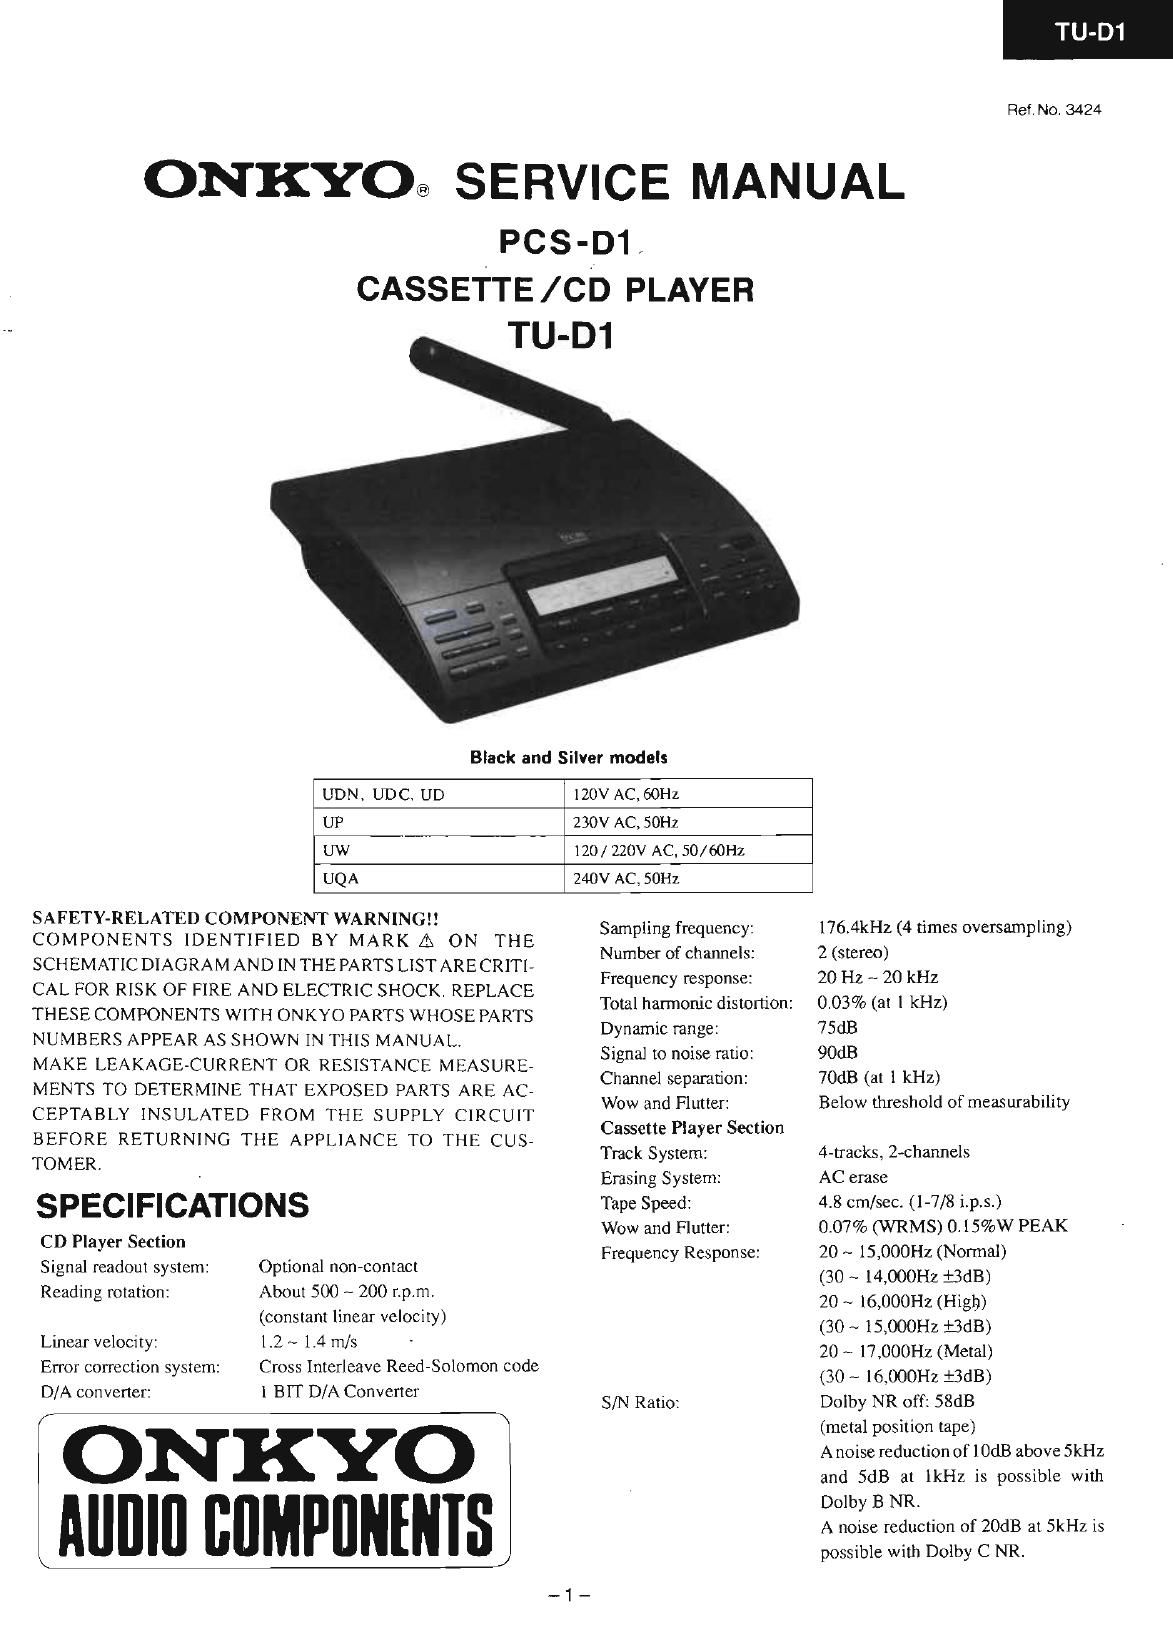 Onkyo PCSD 1 Service Manual